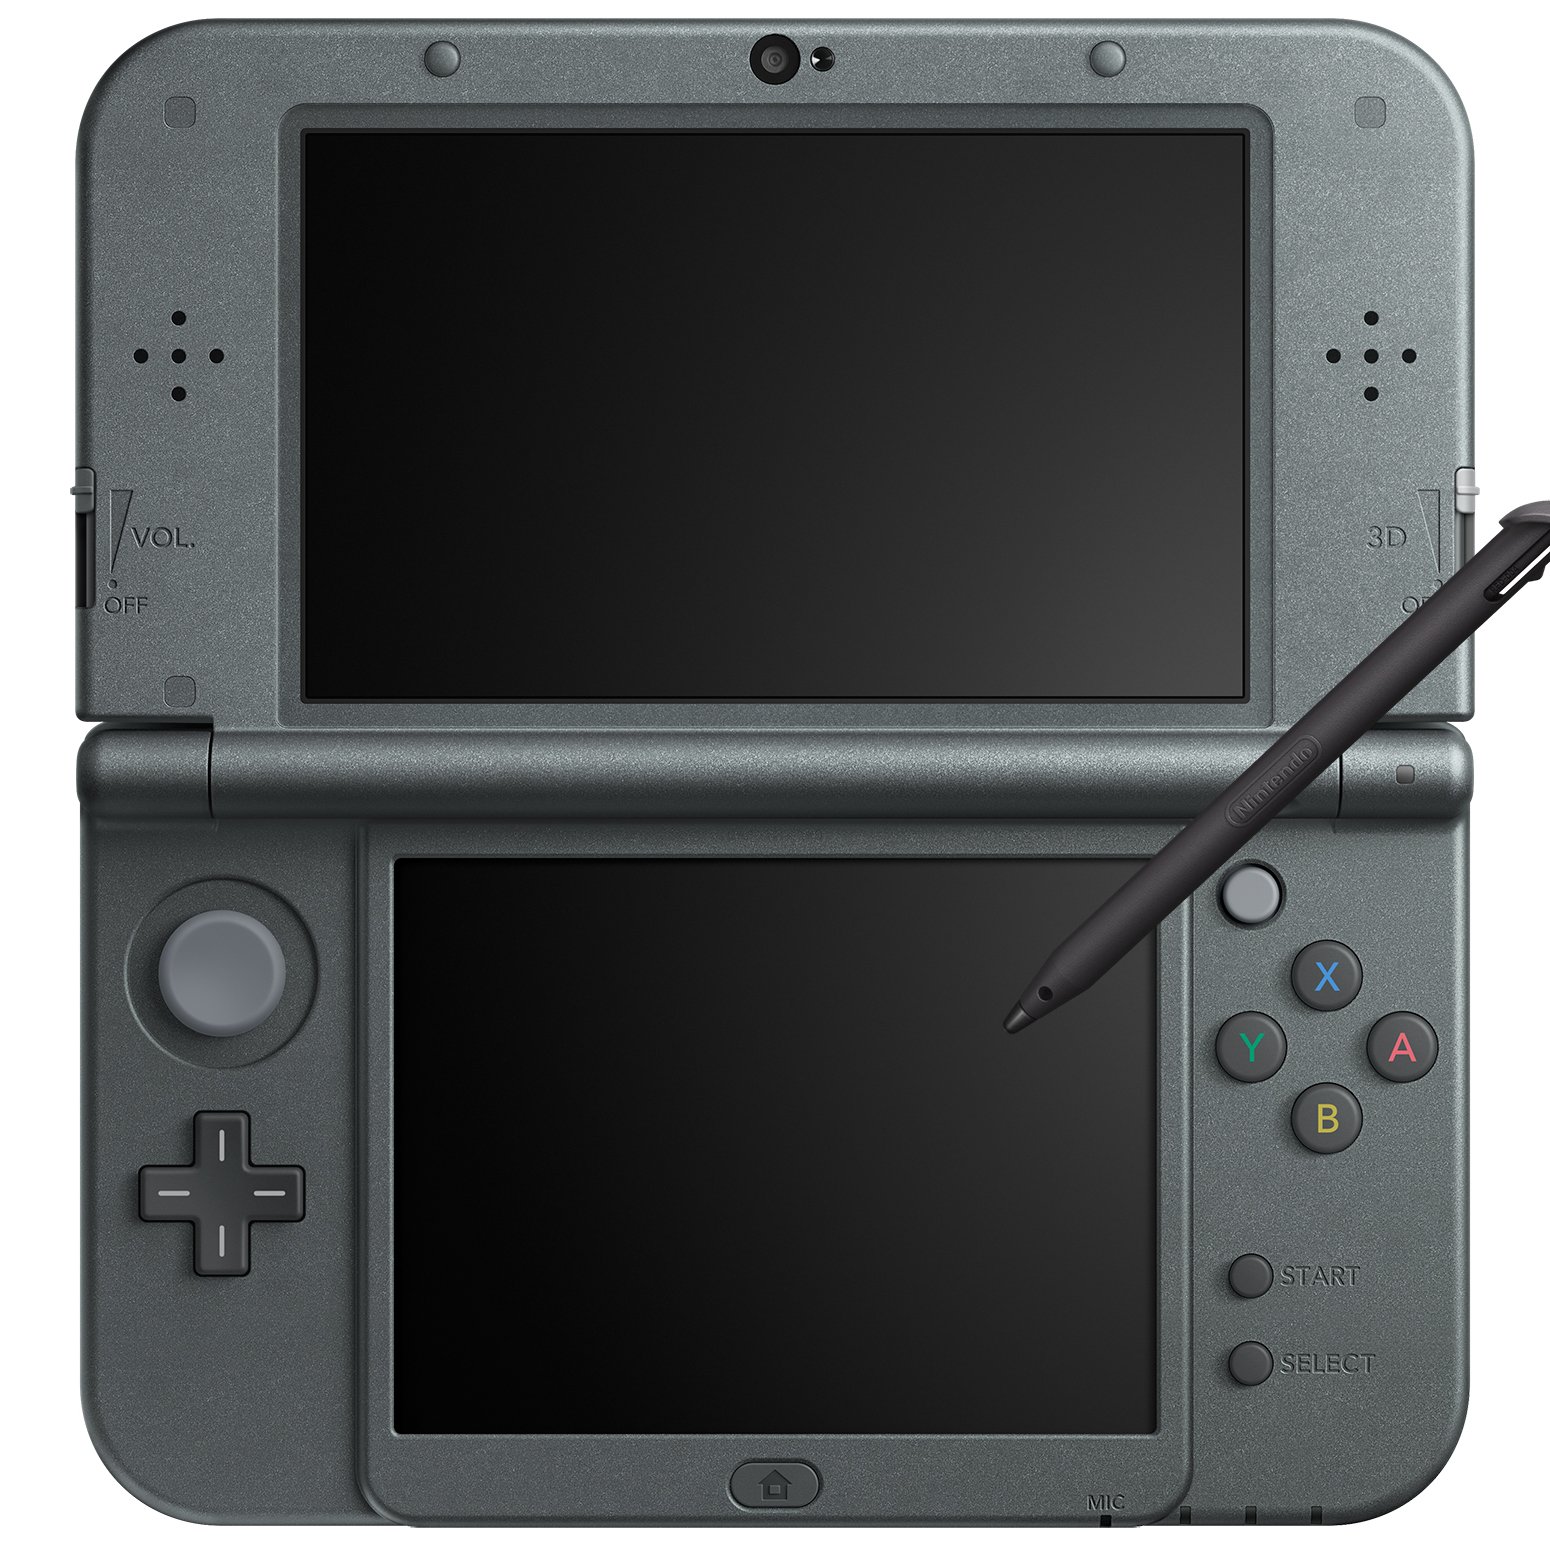 Mua New Nintendo 3DS LL Metallic Black trên Amazon Nhật chính hãng 2022 |  Fado